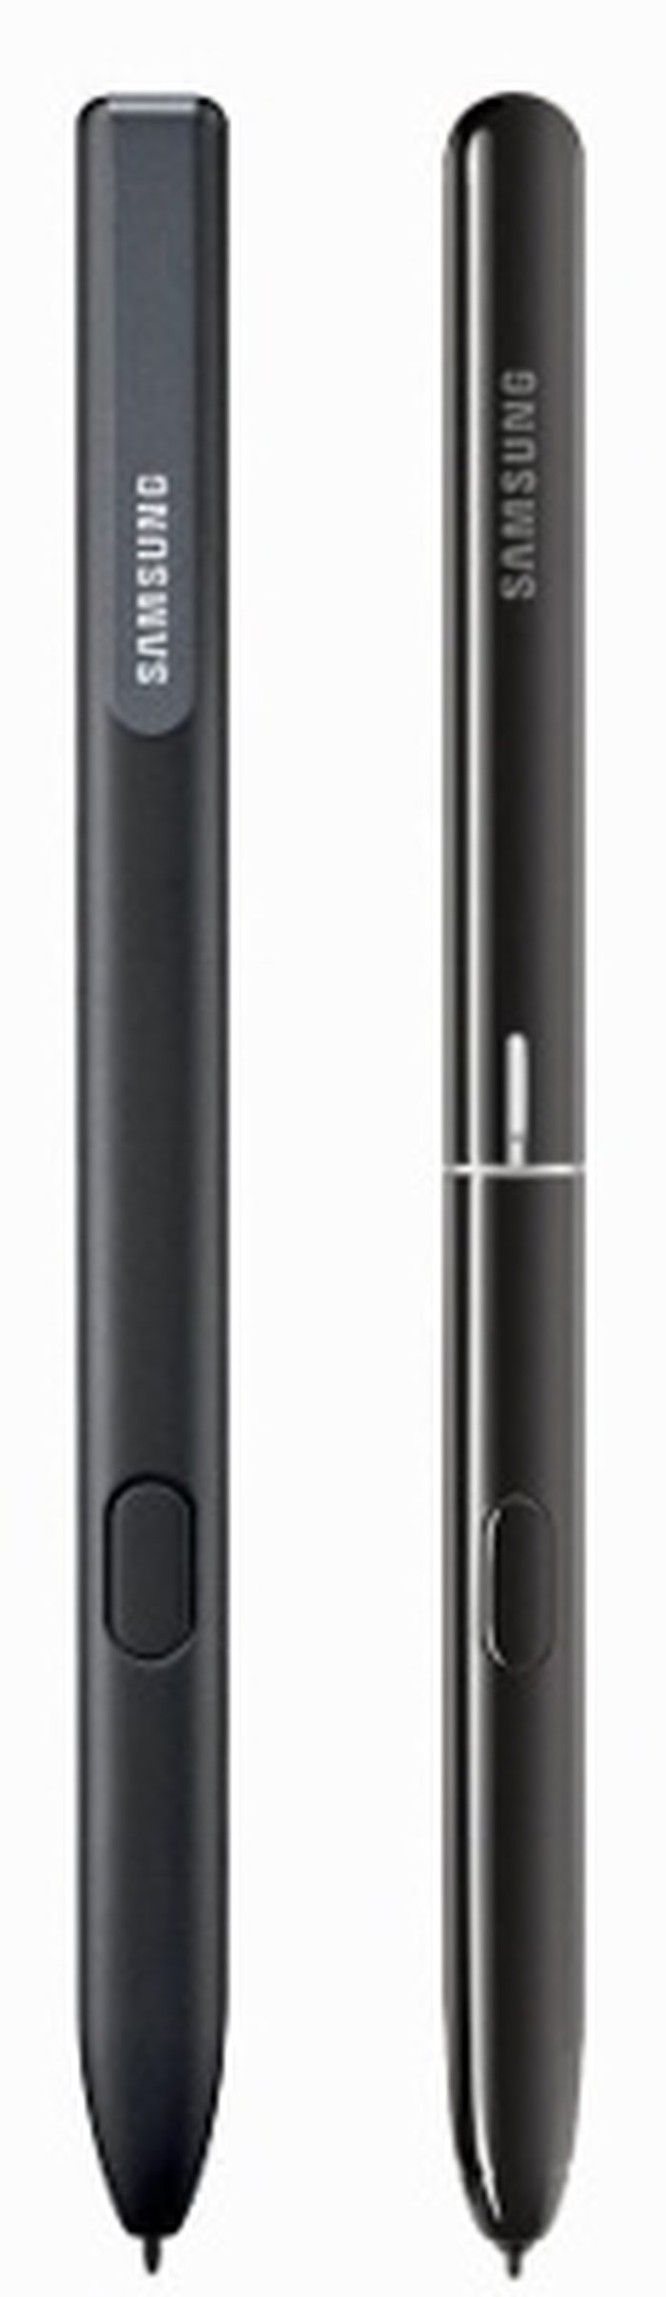 Lộ ảnh báo chí Samsung Galaxy Tab S4 với bút S Pen cải tiến ảnh 3